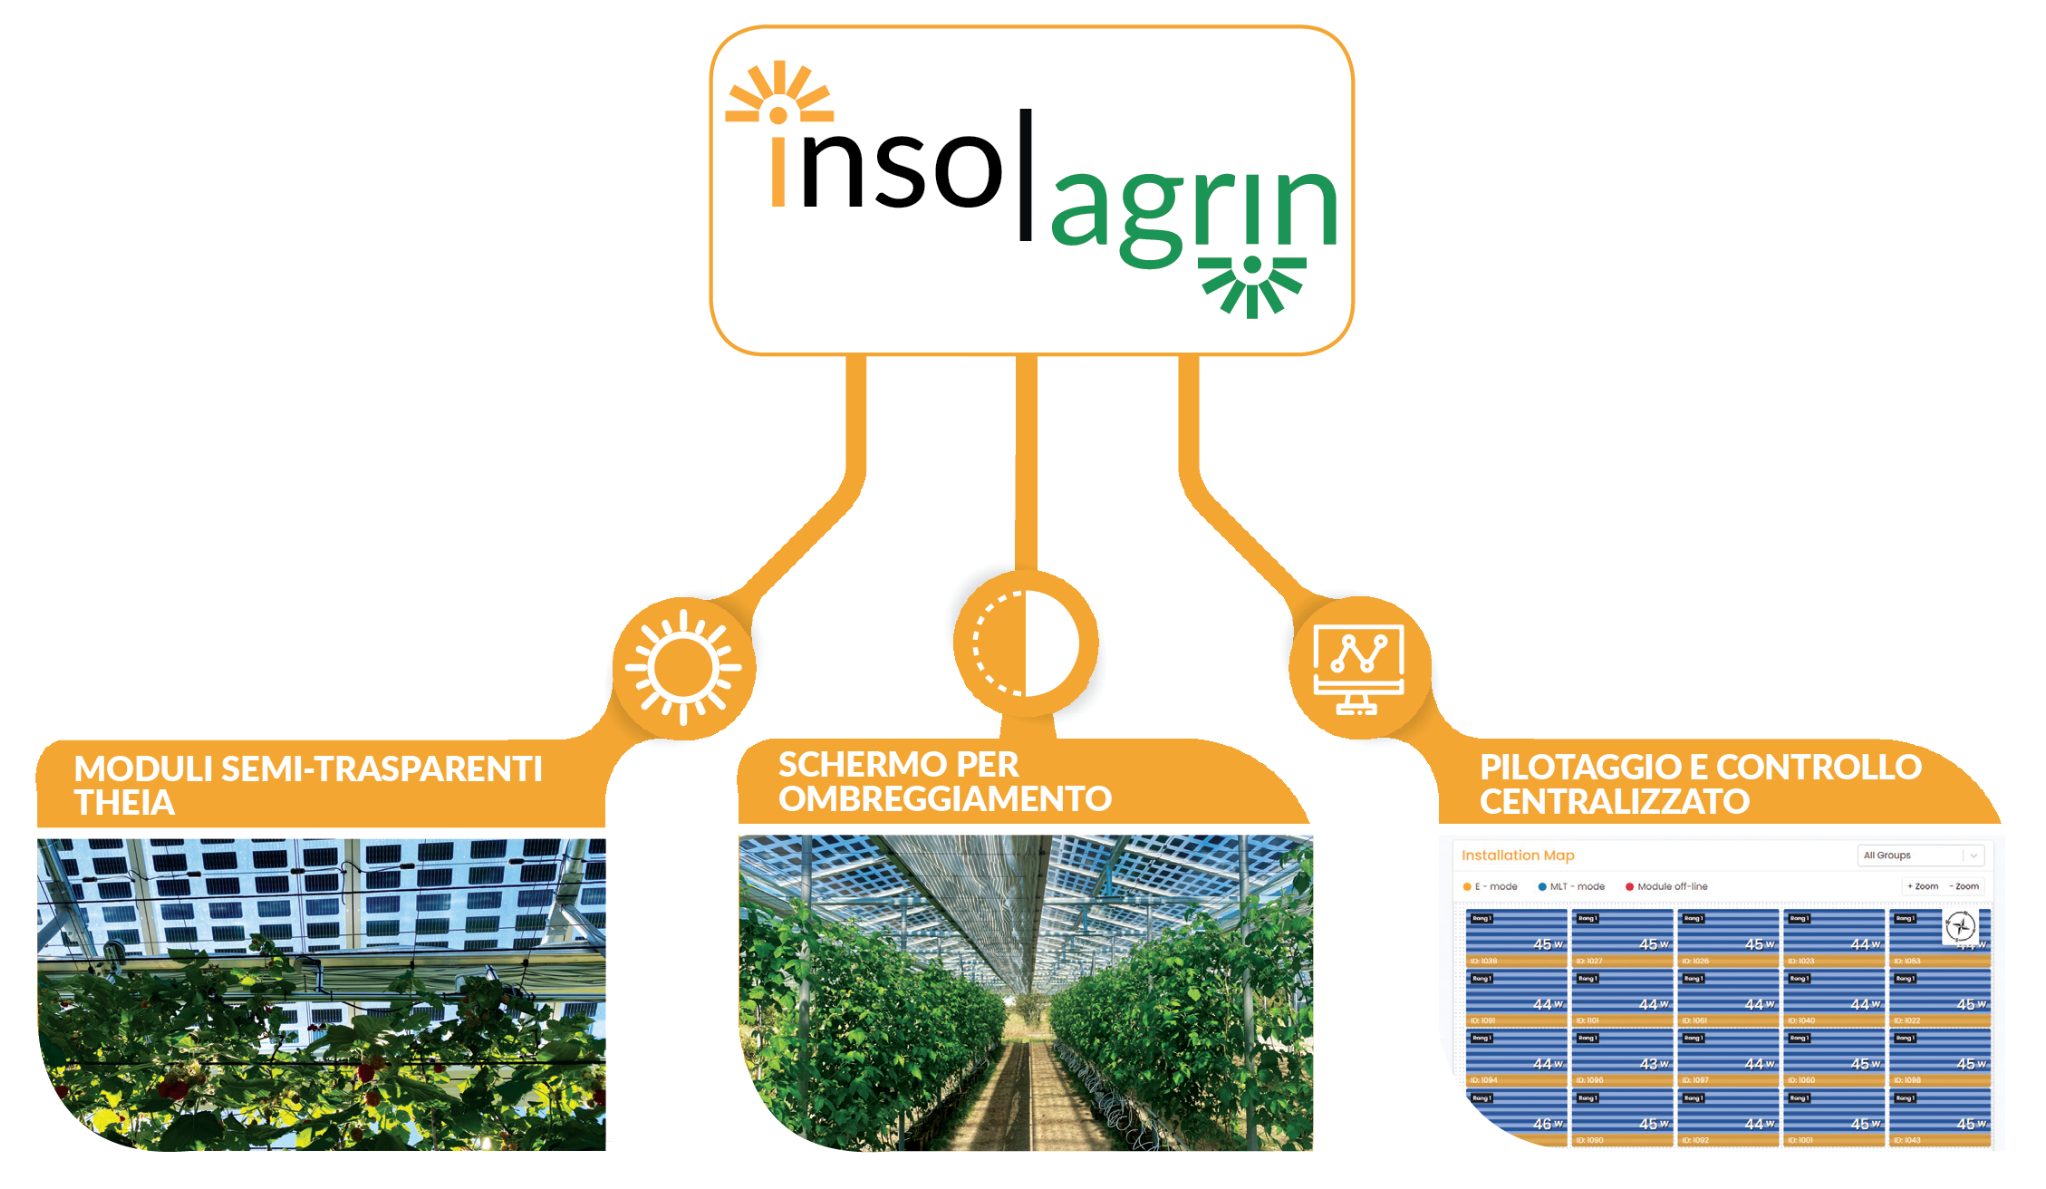 insolagrin_soluzione agrivoltaica dinamica_pannelli solari semi-tranparenti